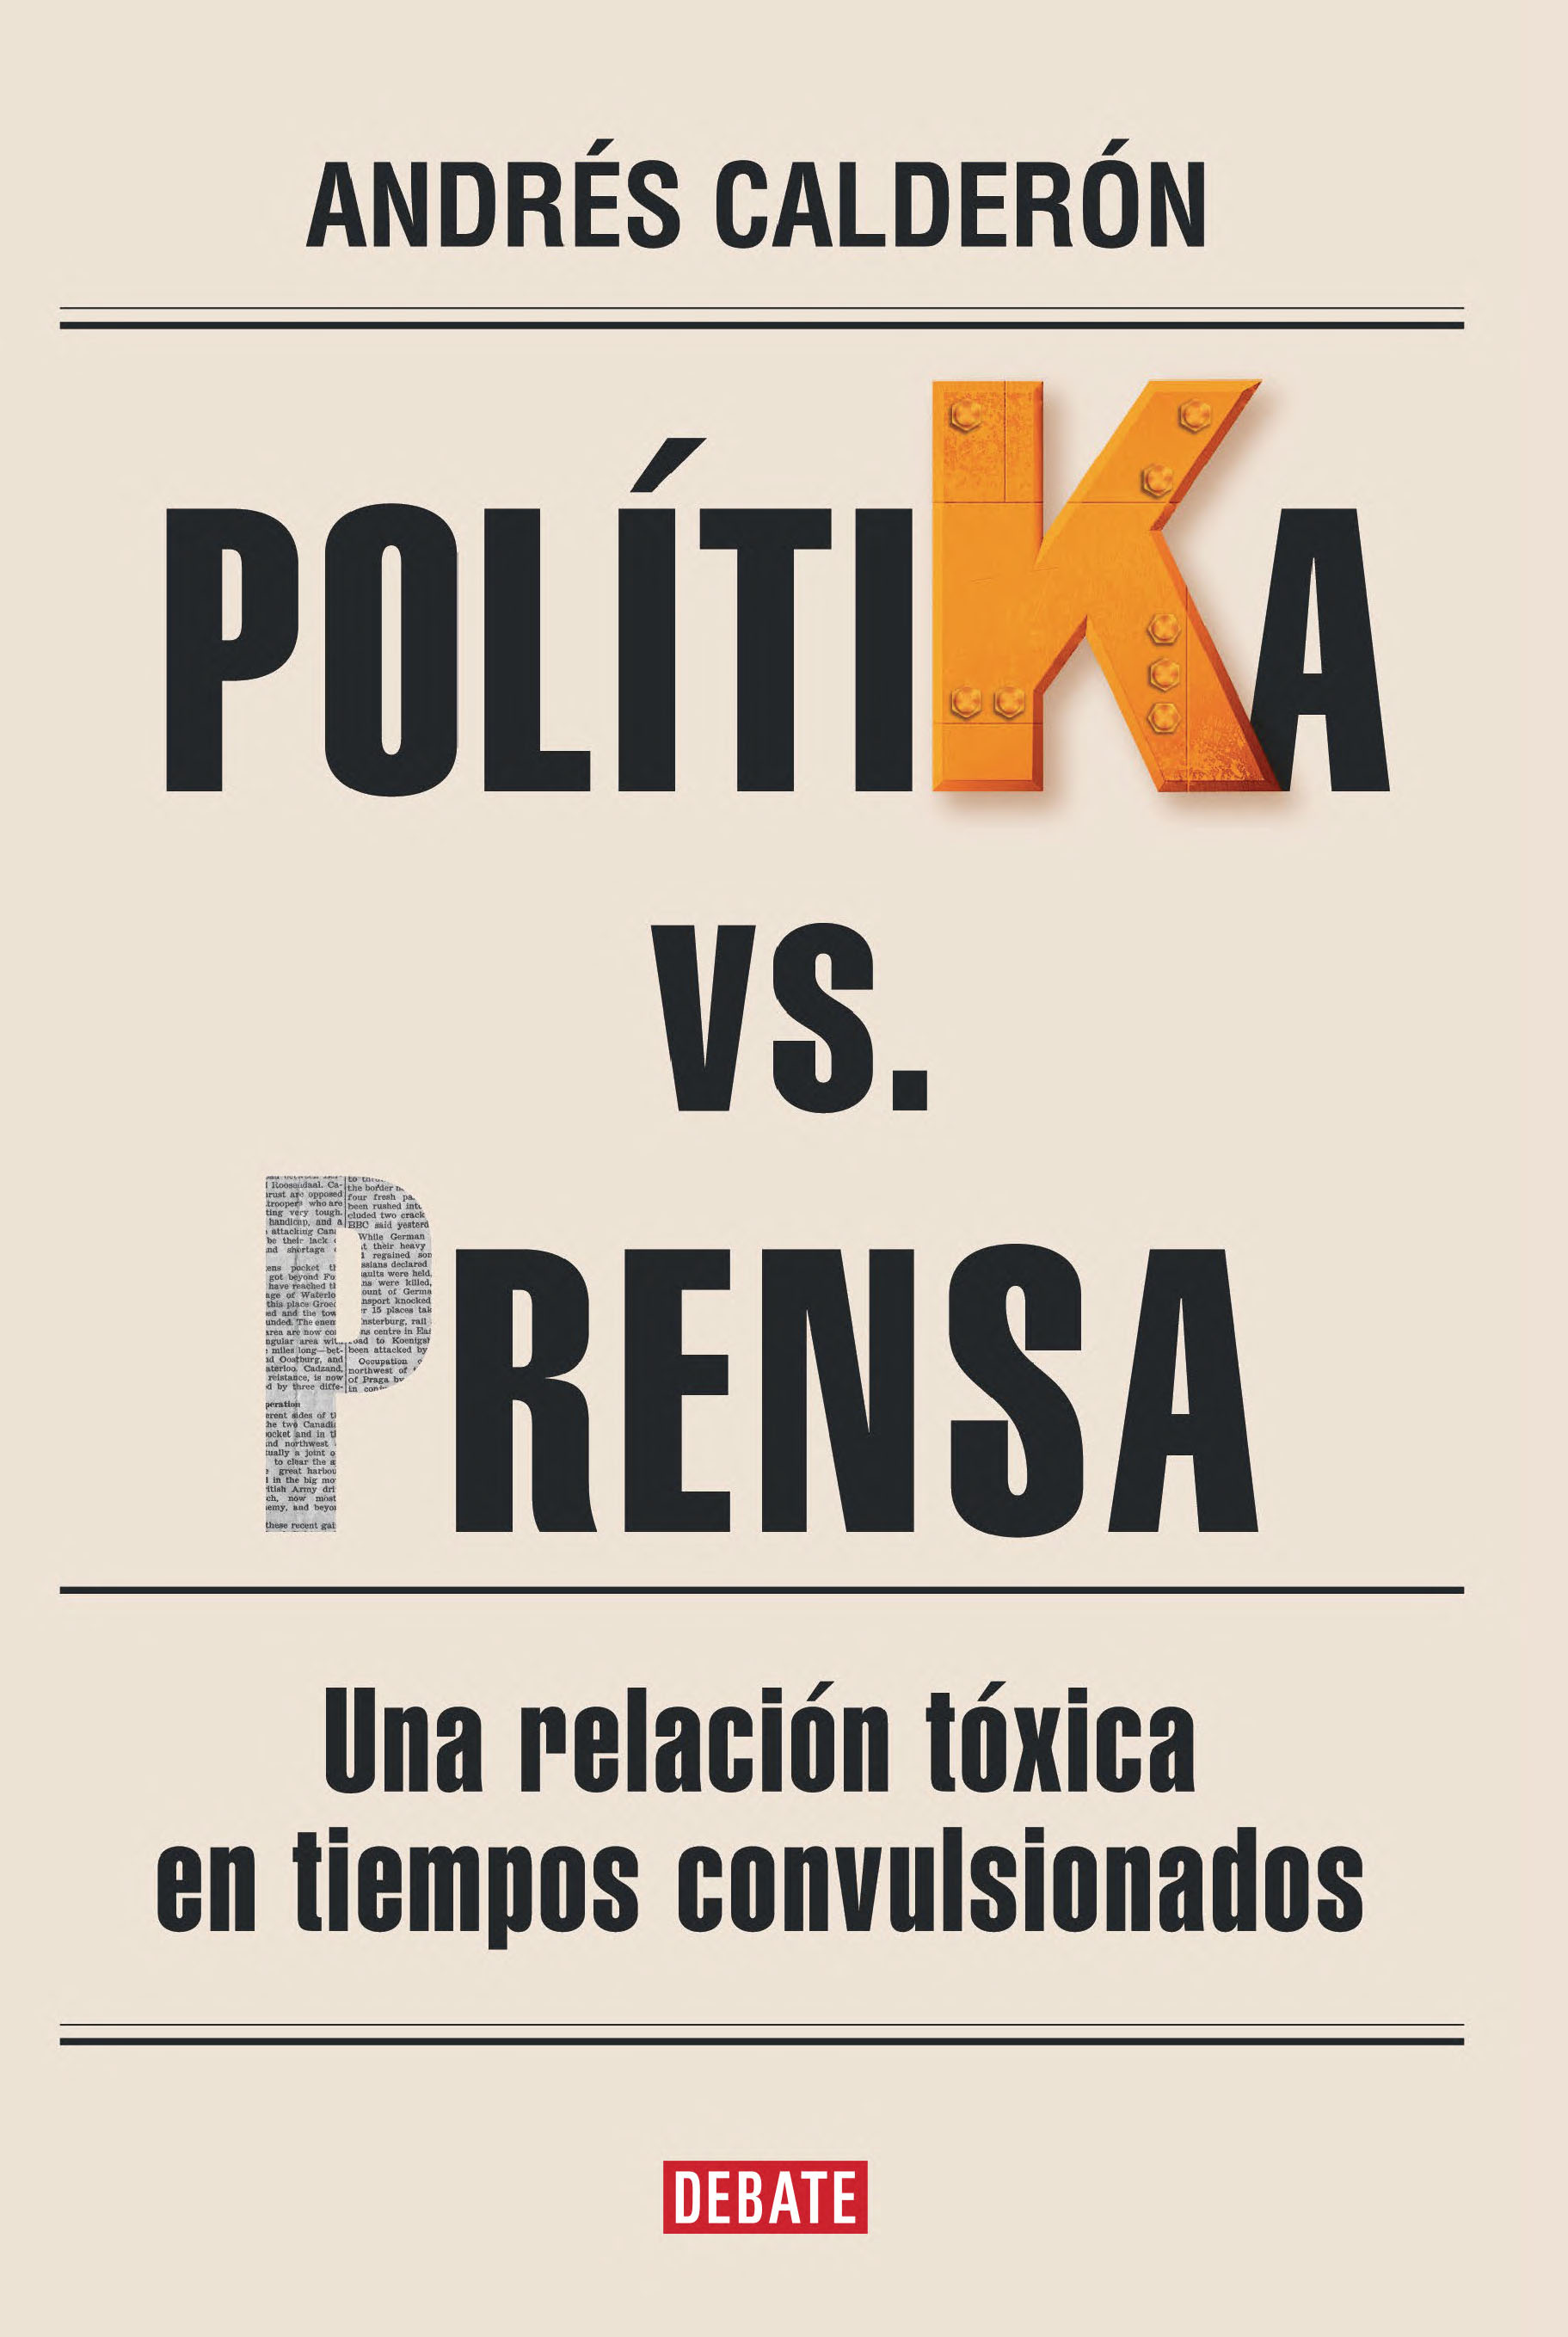 PolitiKa vs. Prensa